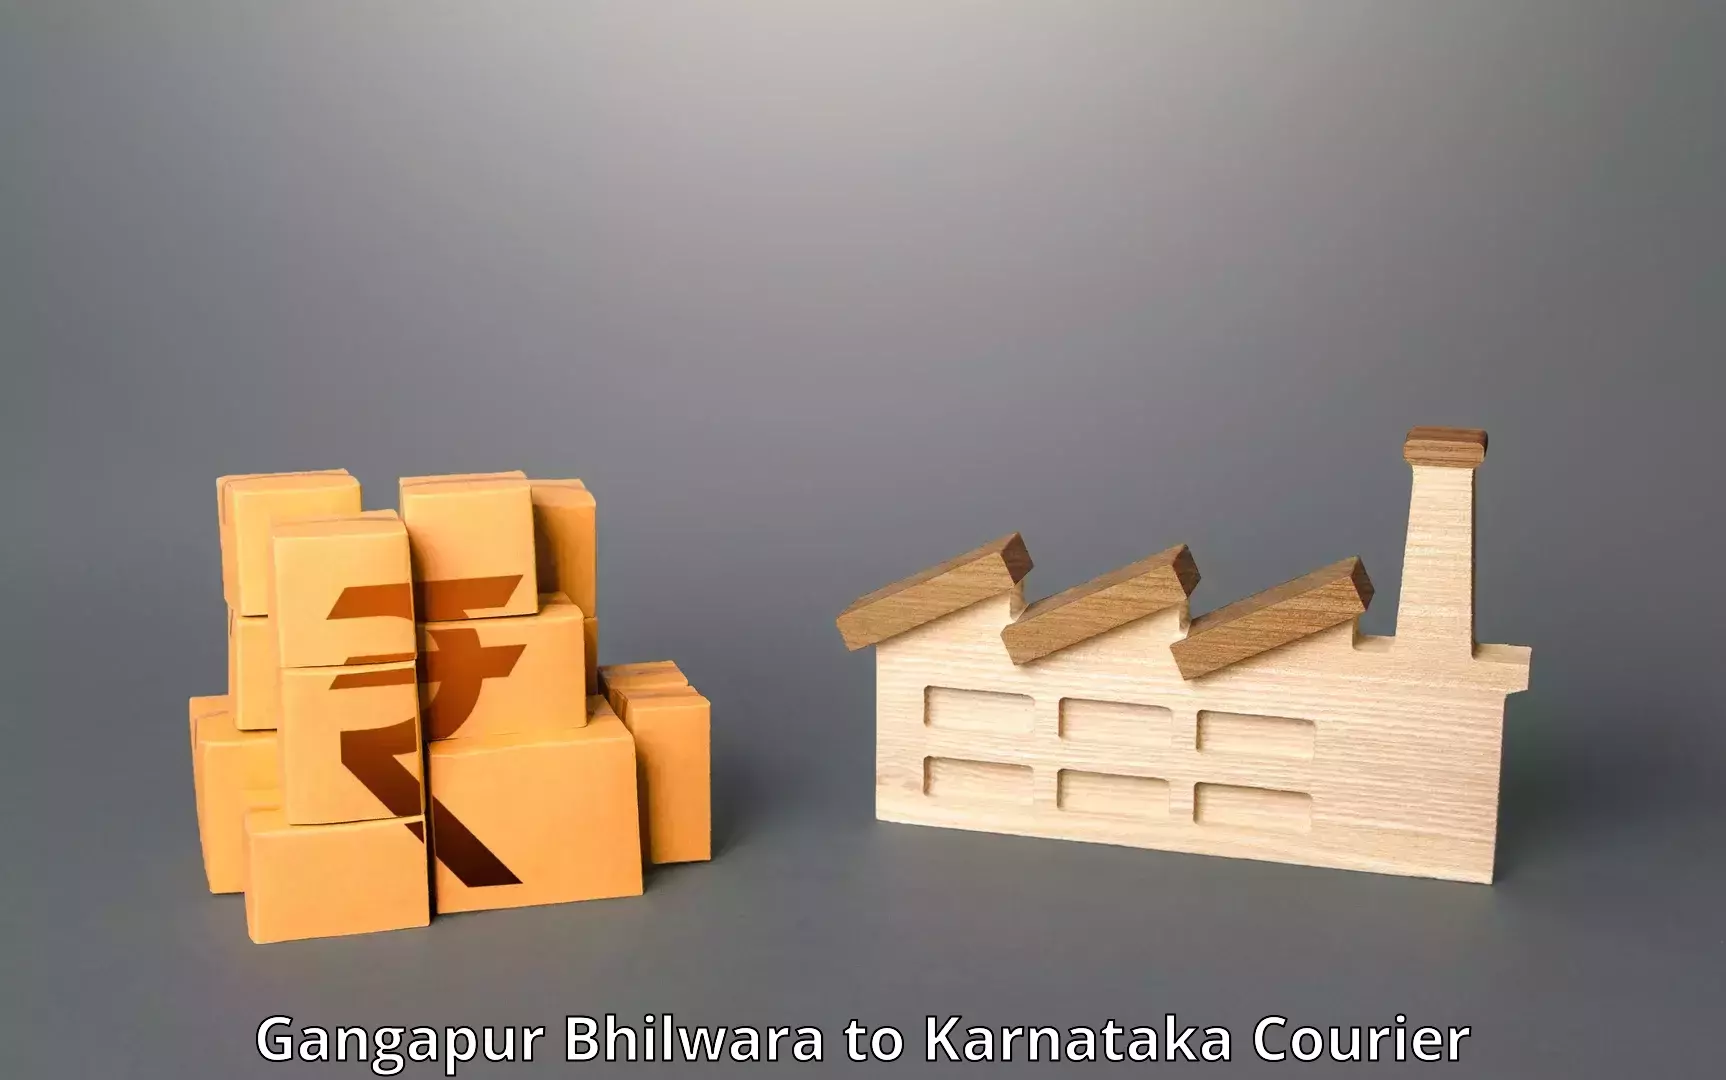 Urgent courier needs Gangapur Bhilwara to Srinivaspur